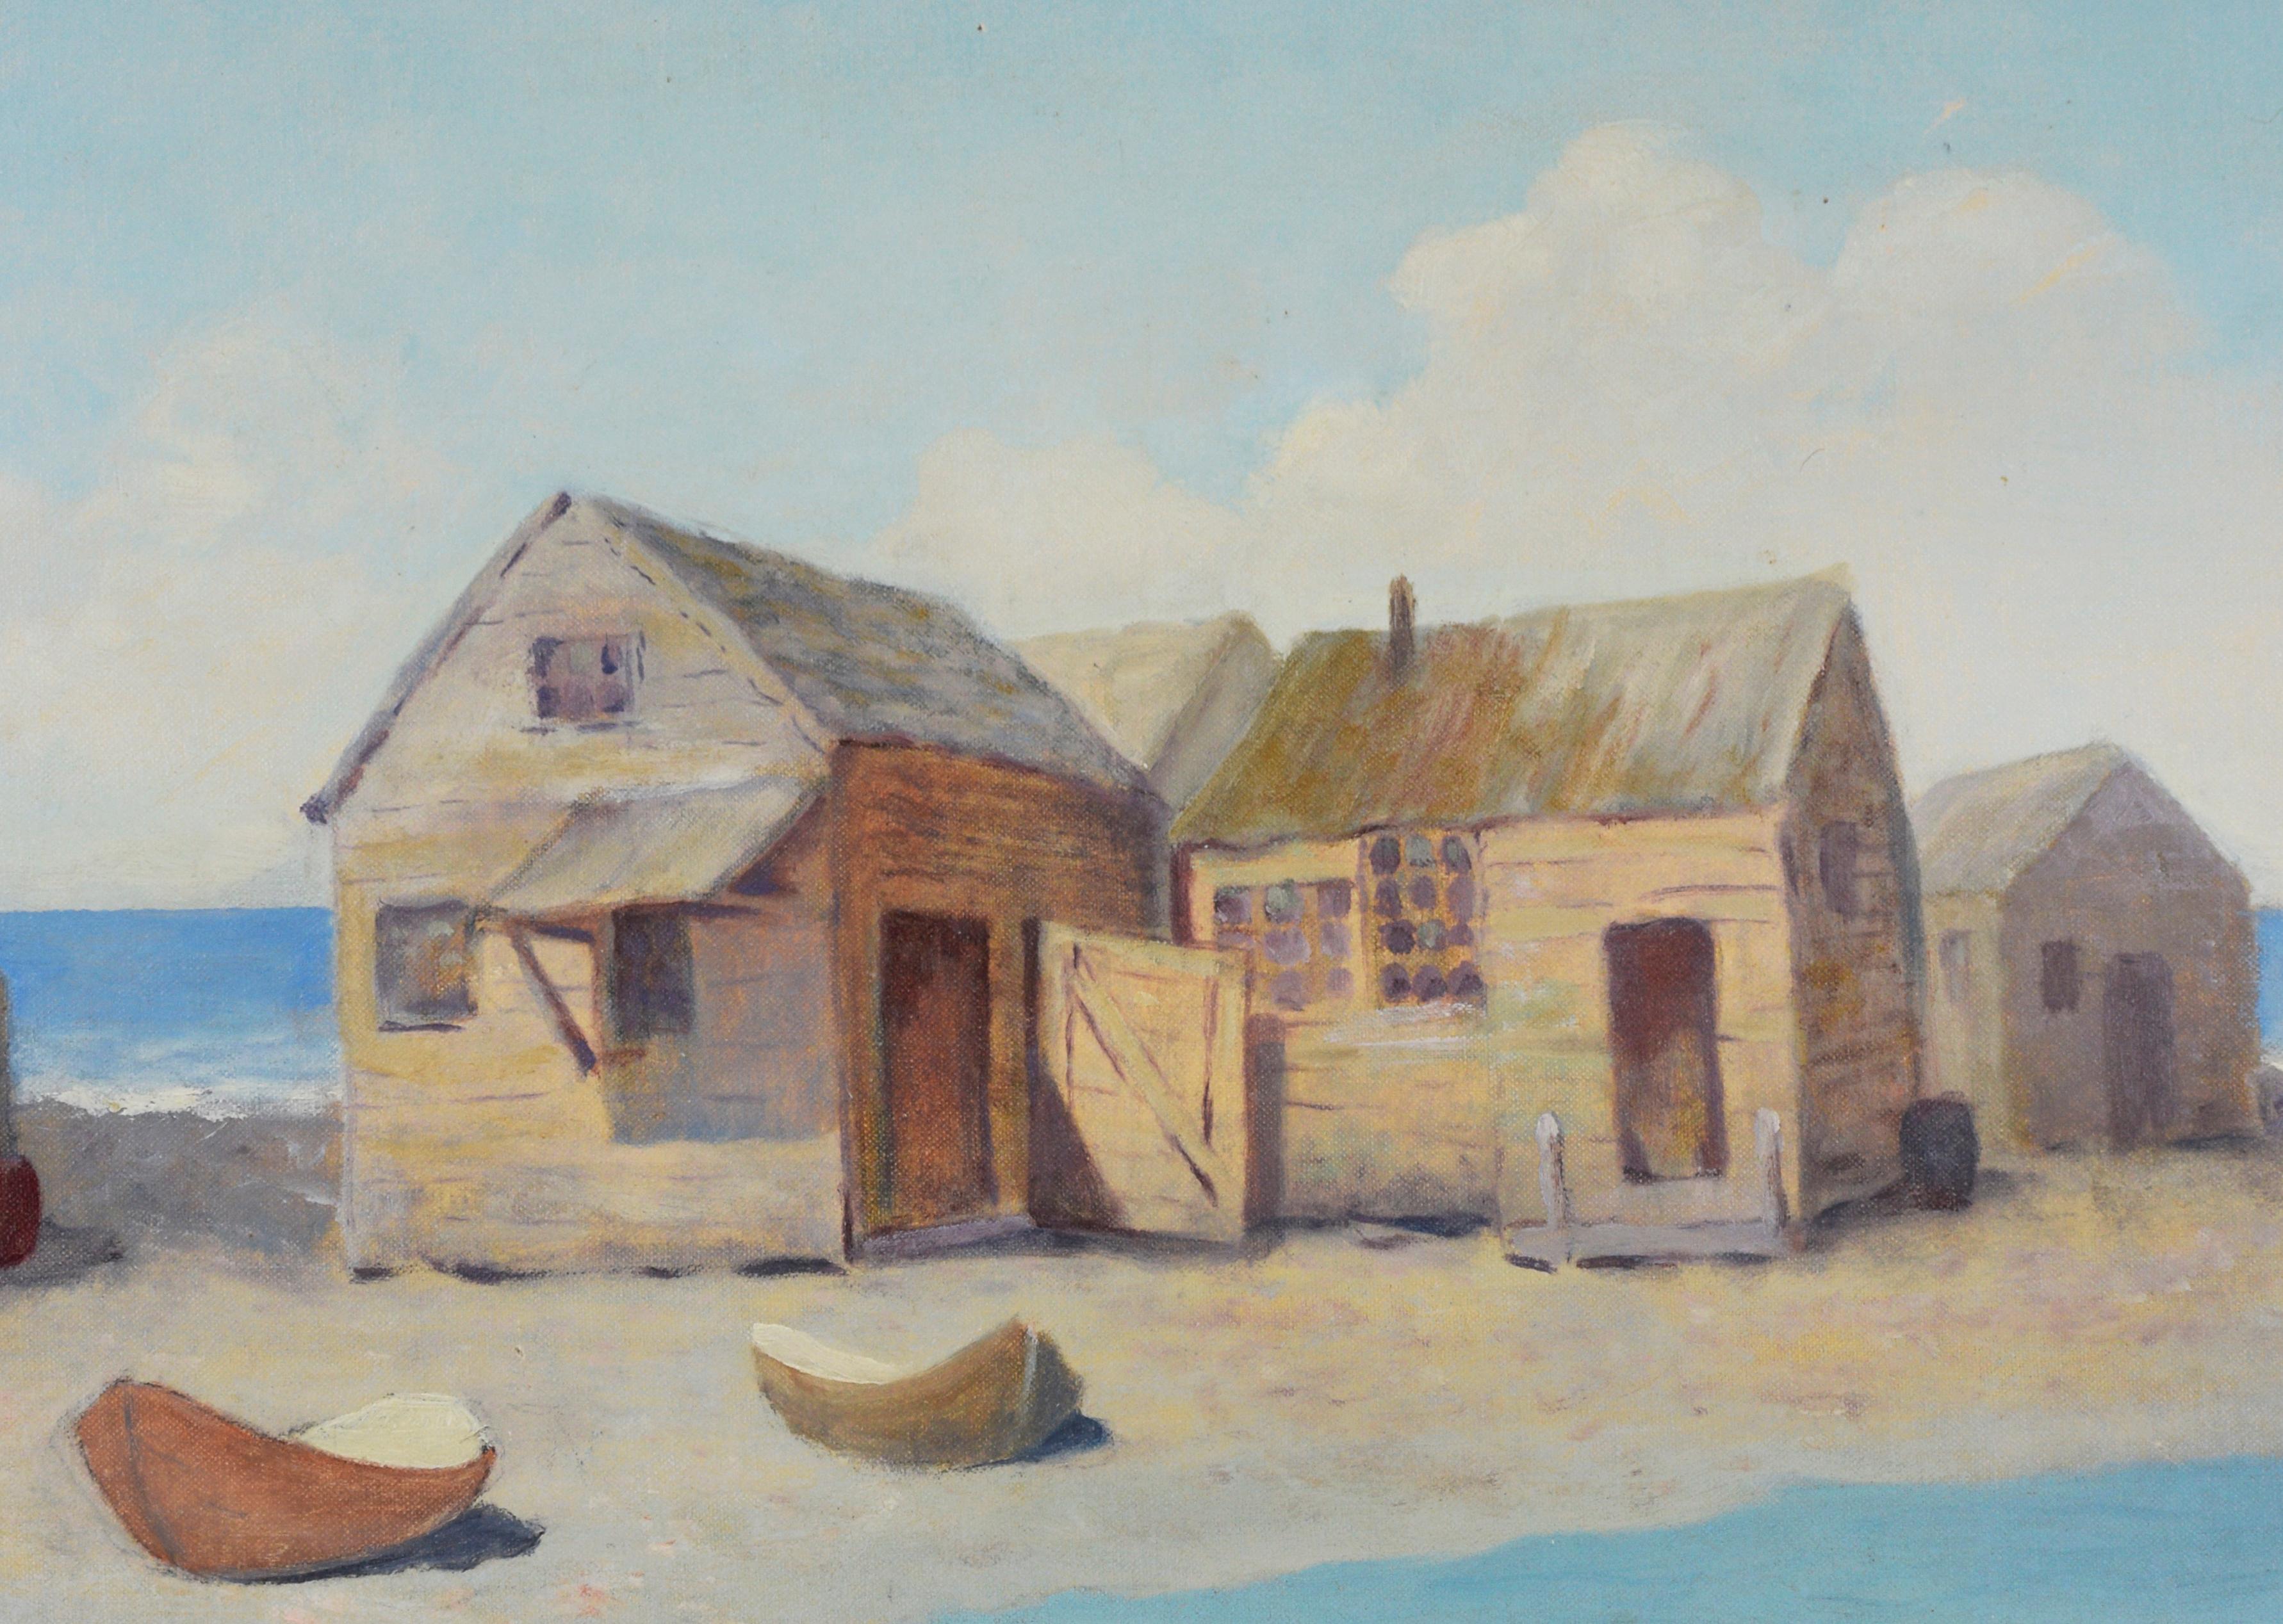 Die Outer Banks North Carolina - Fischerboote Öl auf Leinwand 1930er Jahre (Amerikanischer Impressionismus), Painting, von E. McNeir Lang